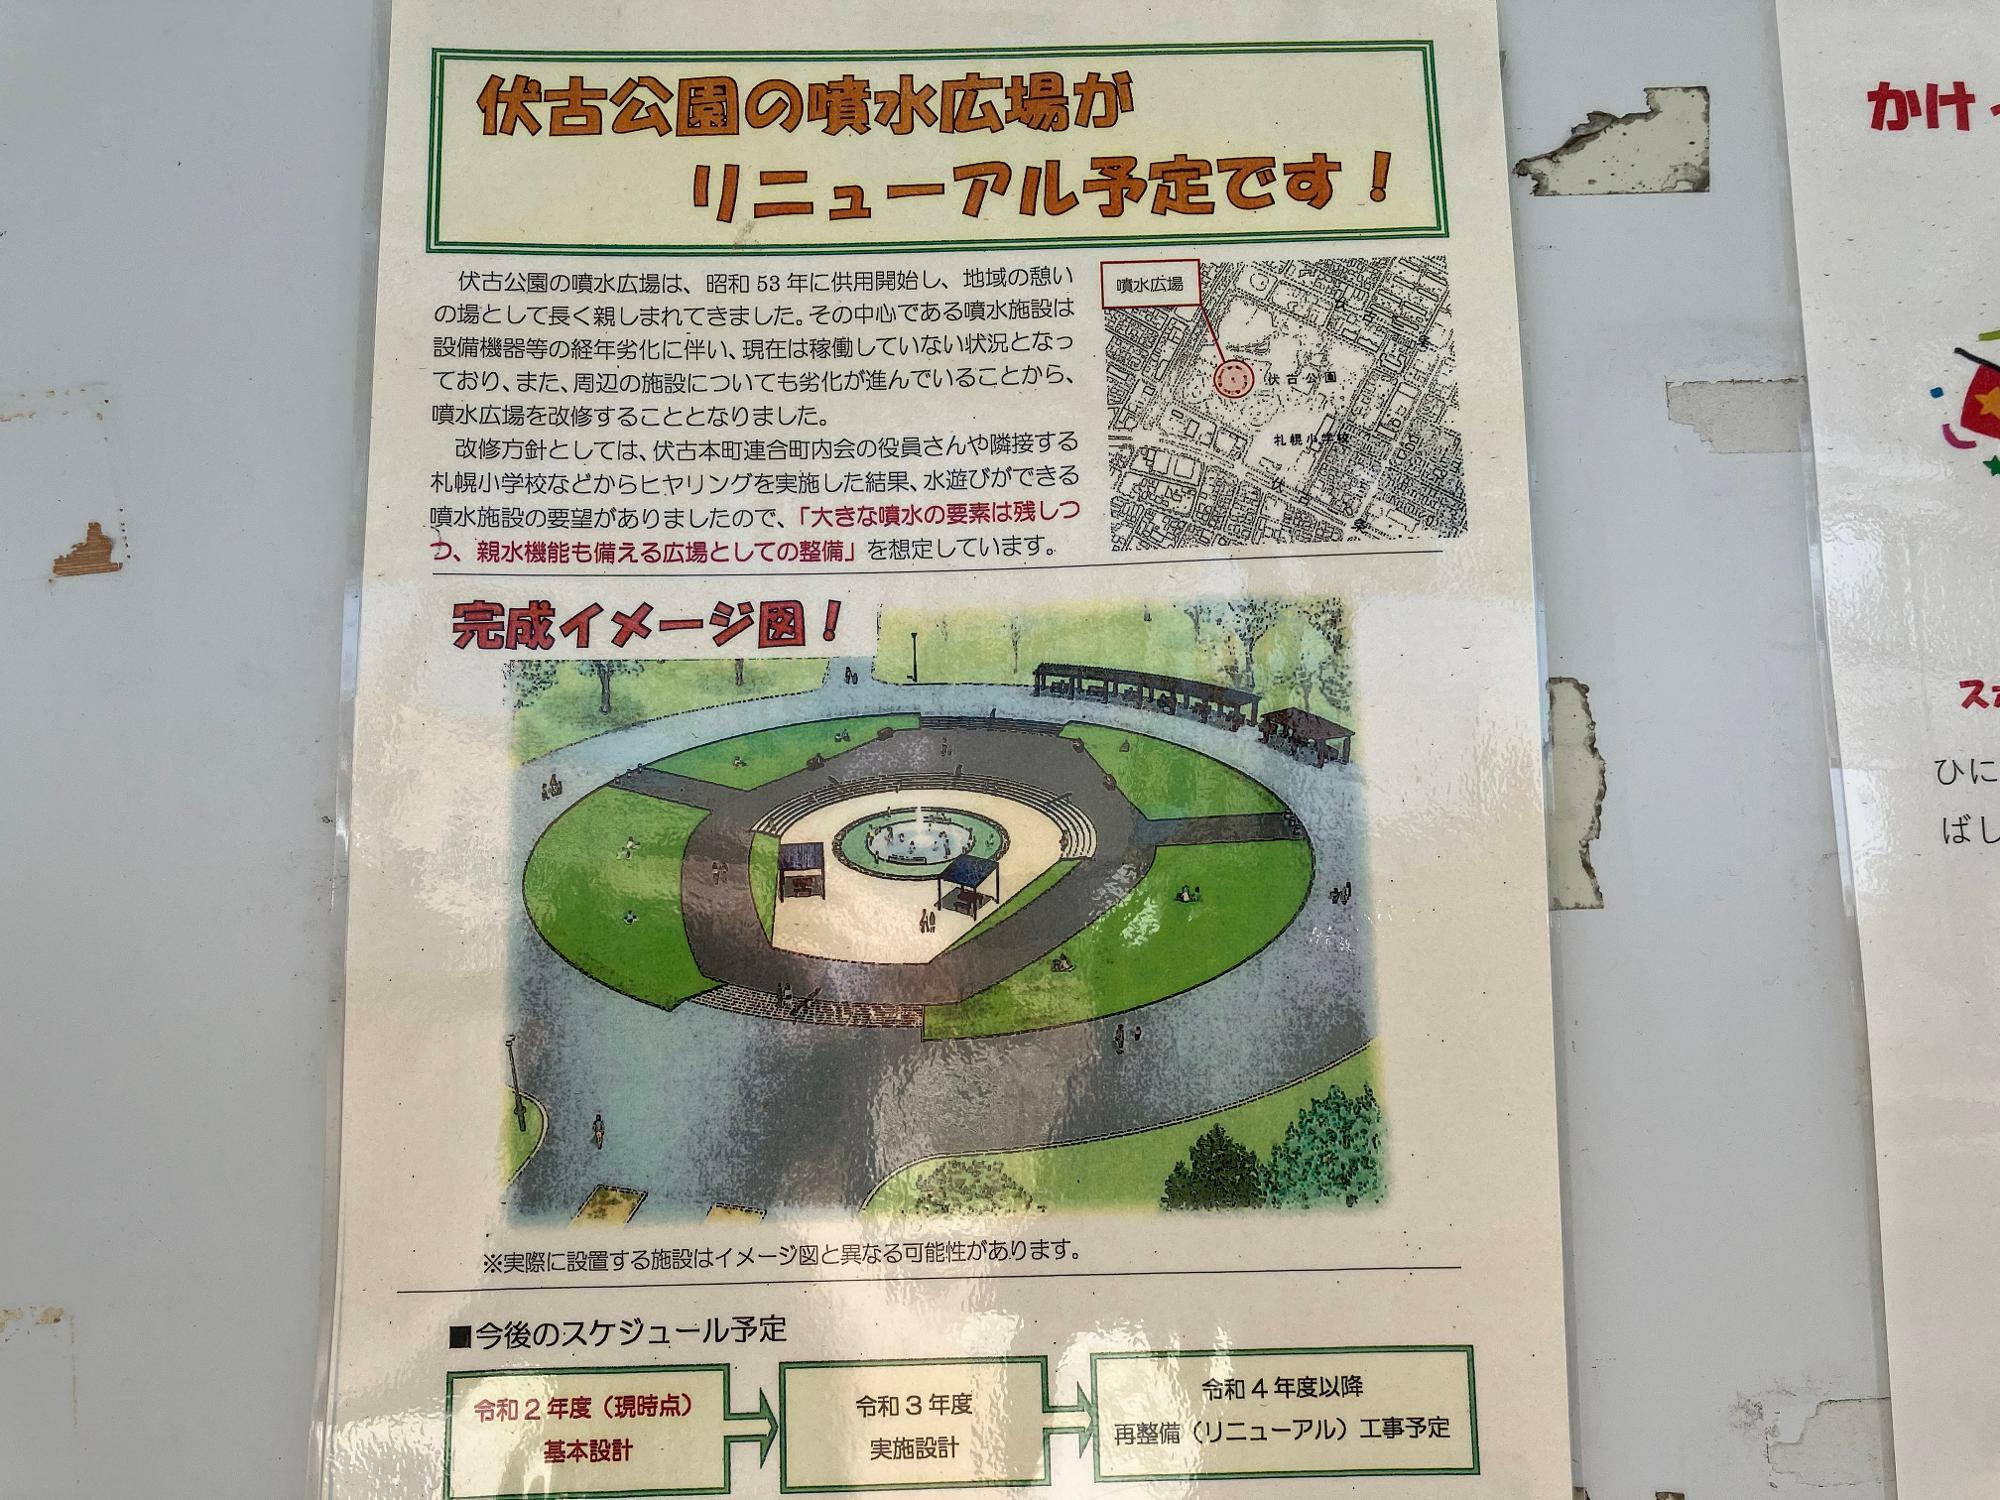 伏古公園の噴水広場がリニューアル予定です！